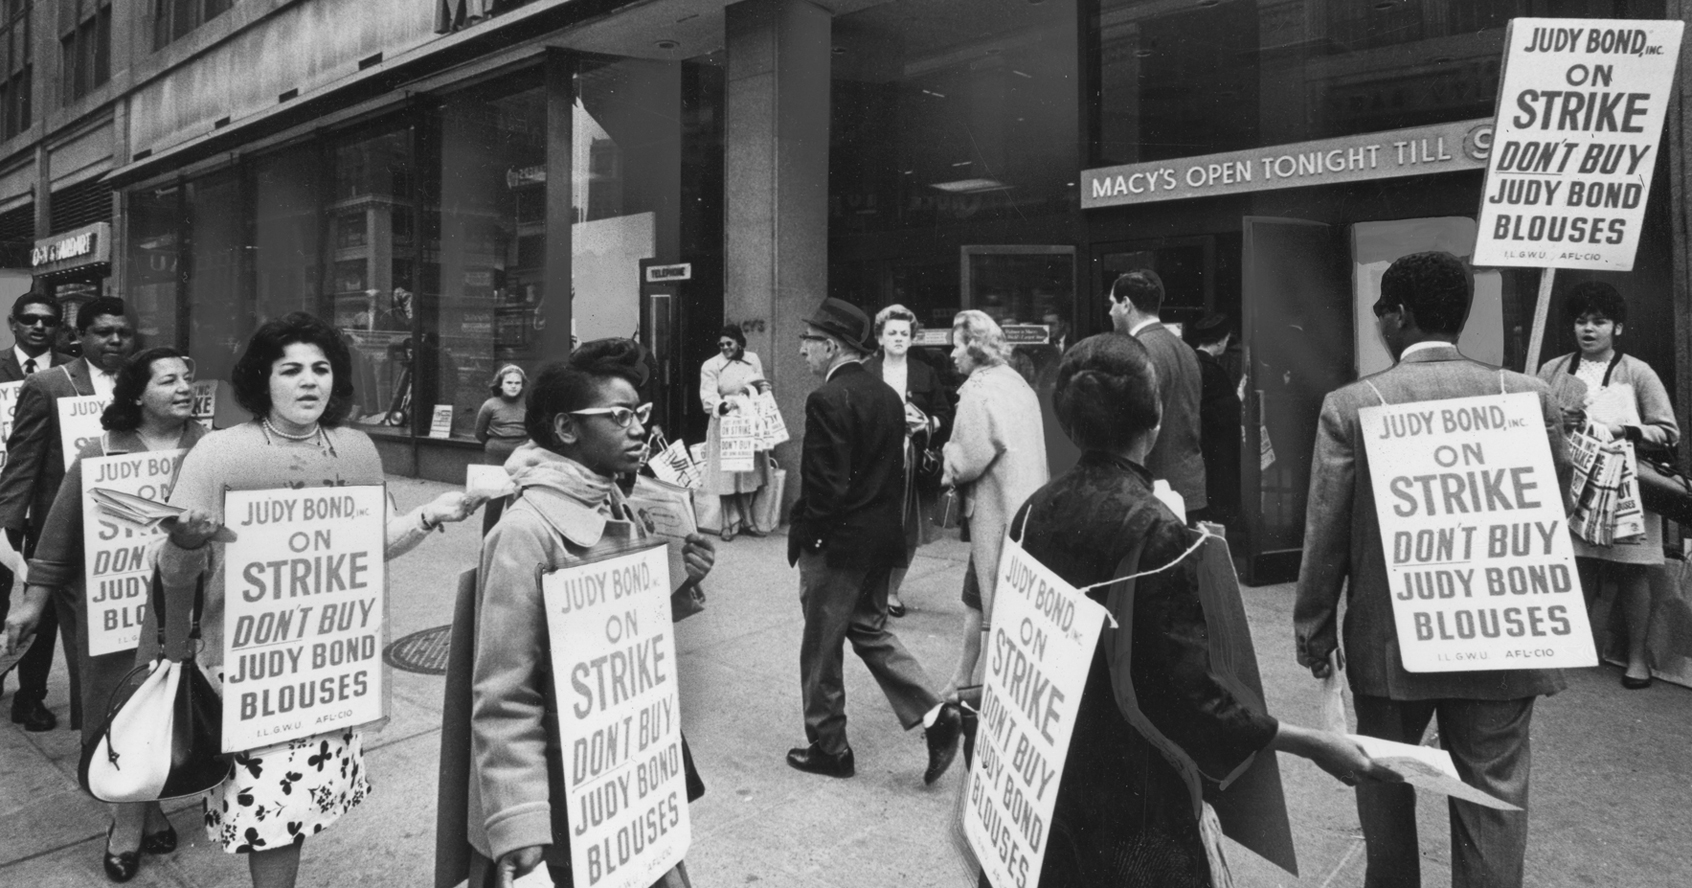 ストライキ中の労働者のグループがメイシーズの外で行進し、人々がジュディ・ボンドのブラウスを買わないように促す標識を着用